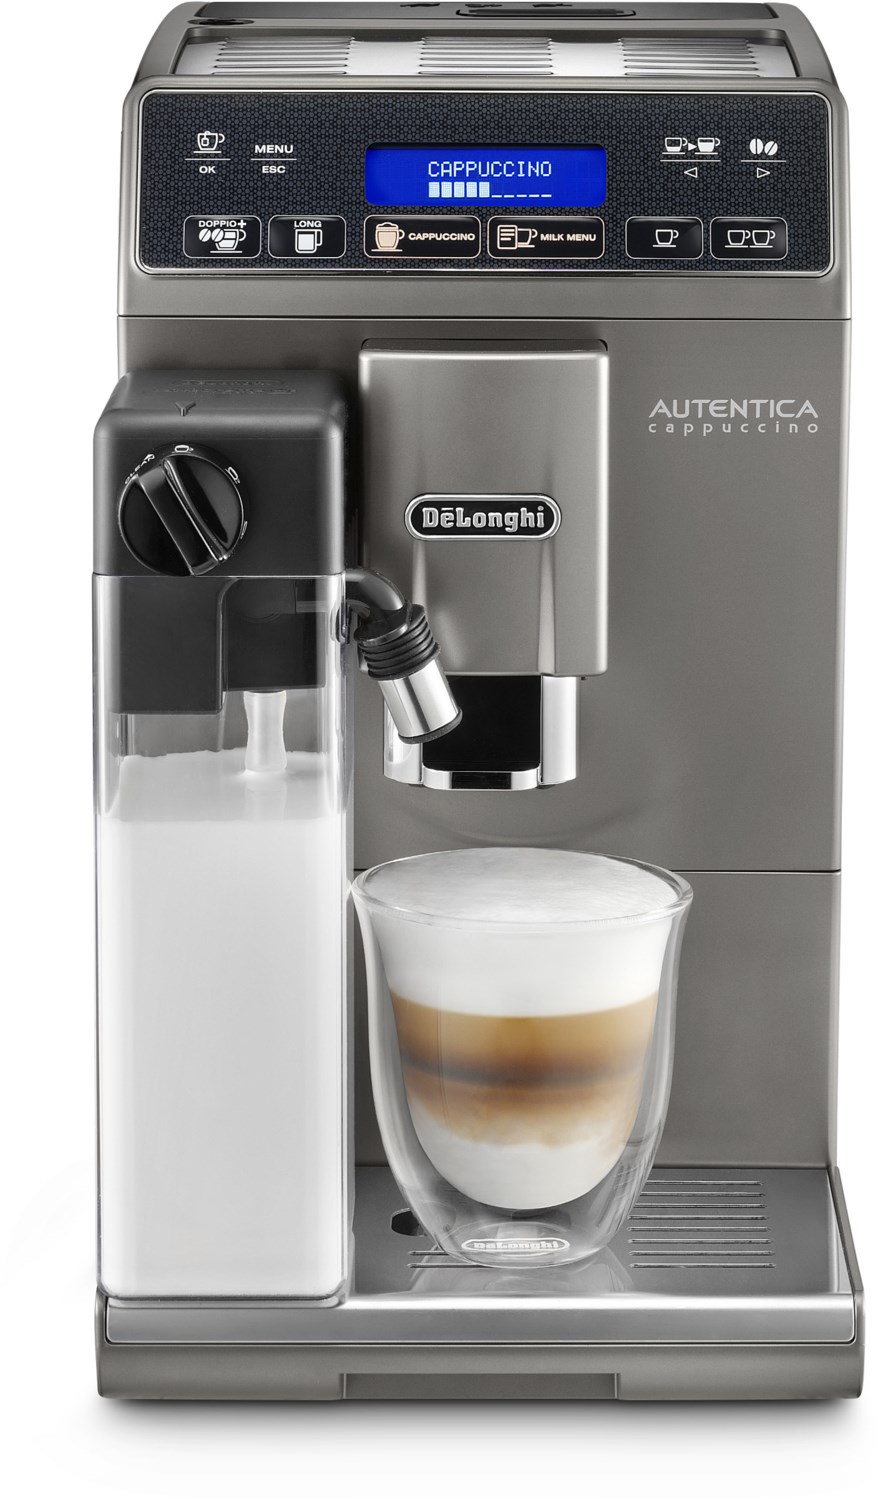 ETAM 29.666 T Autentica Cappuccino Kaffee-Vollautomat silber von Delonghi